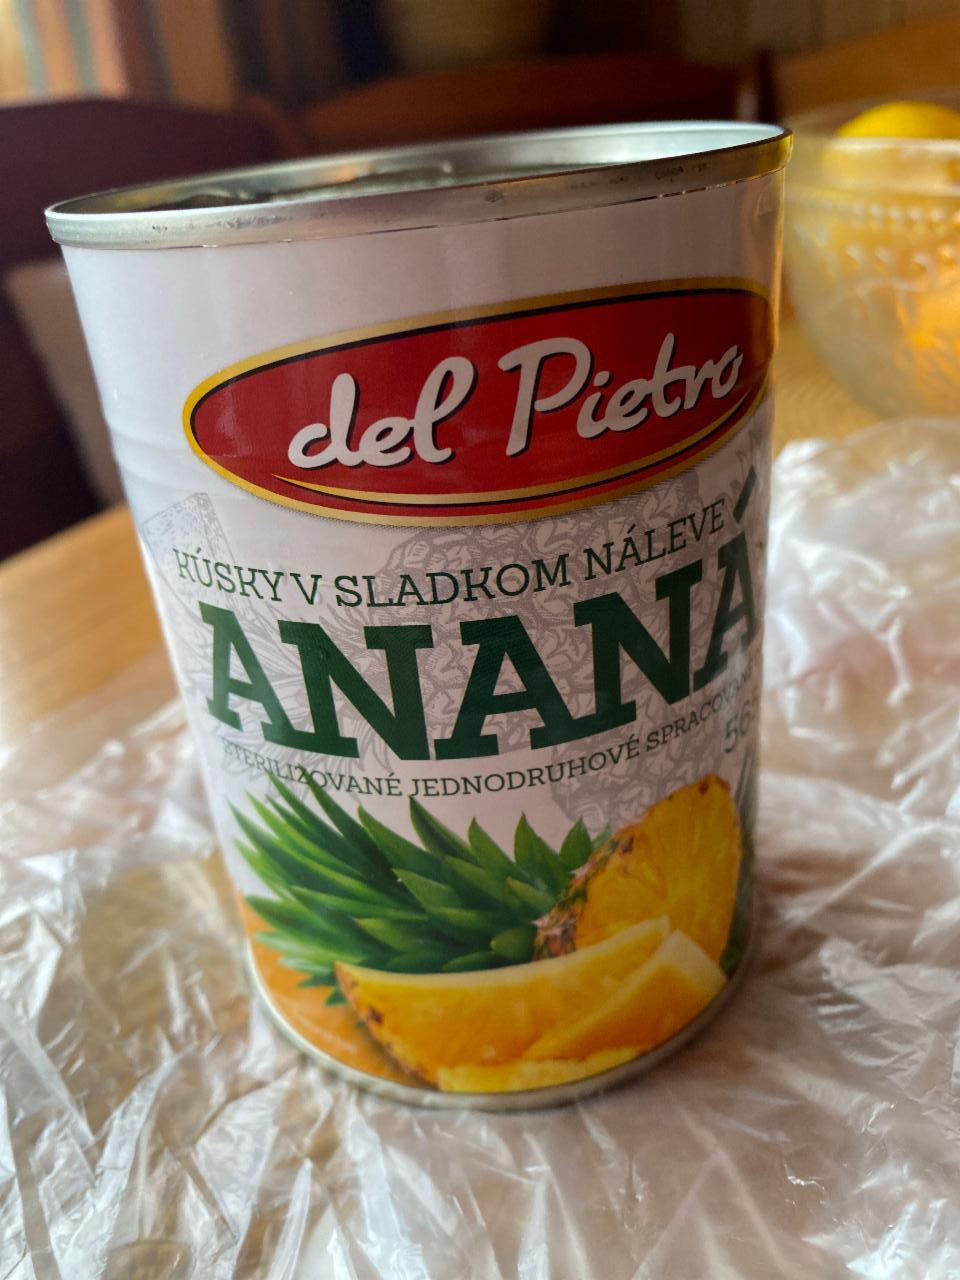 Fotografie - Kúsky v sladkom náleve ananás Del Pietro